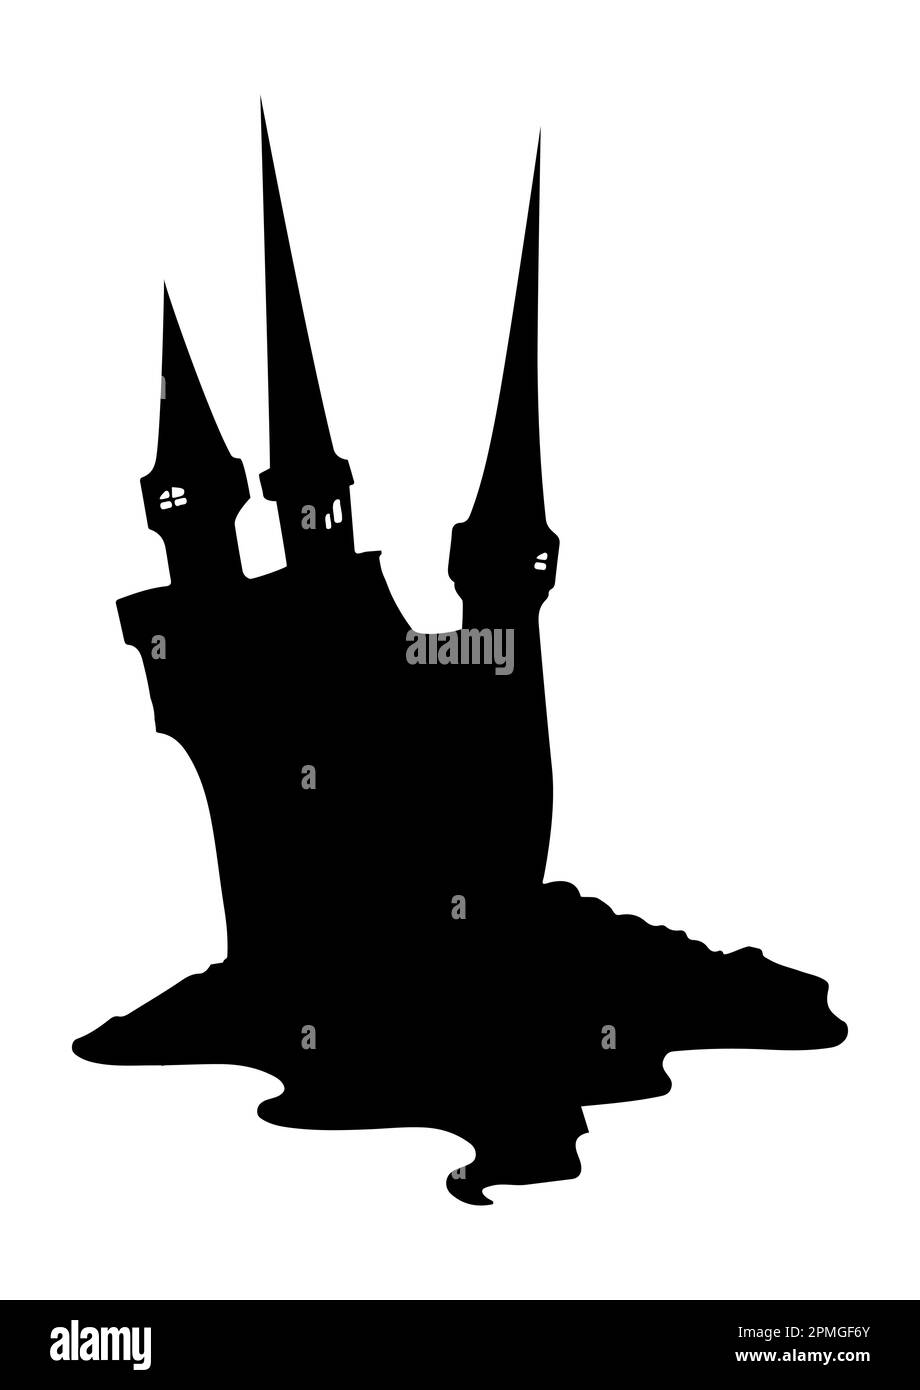 Dunkle, gruselige Burg im flachen Stil, isoliert auf weißem Hintergrund, Vektordarstellung Stock Vektor